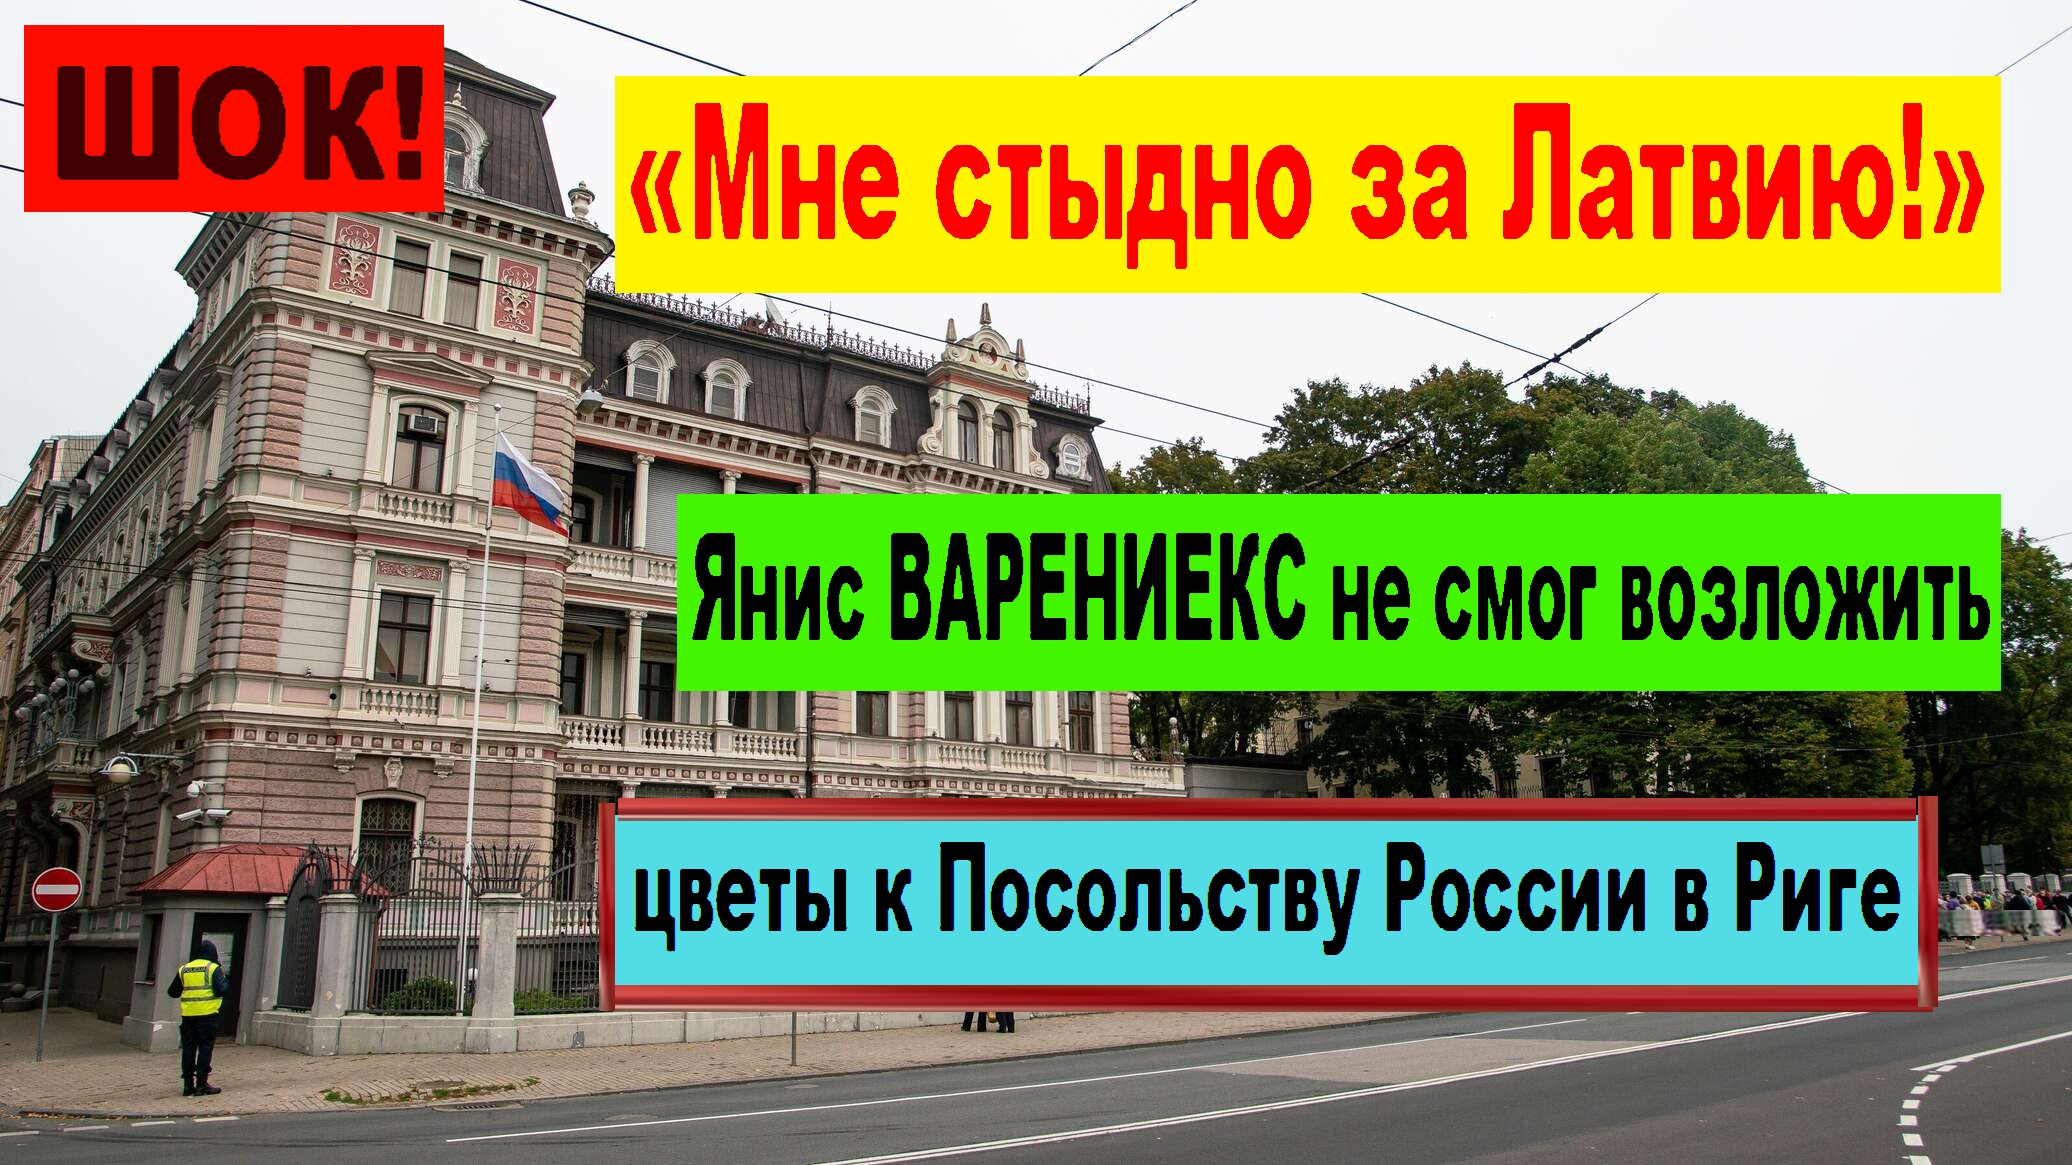 ШОК! Янис ВАРЕНИЕКС не смог возложить цветы к Посольству России в Риге